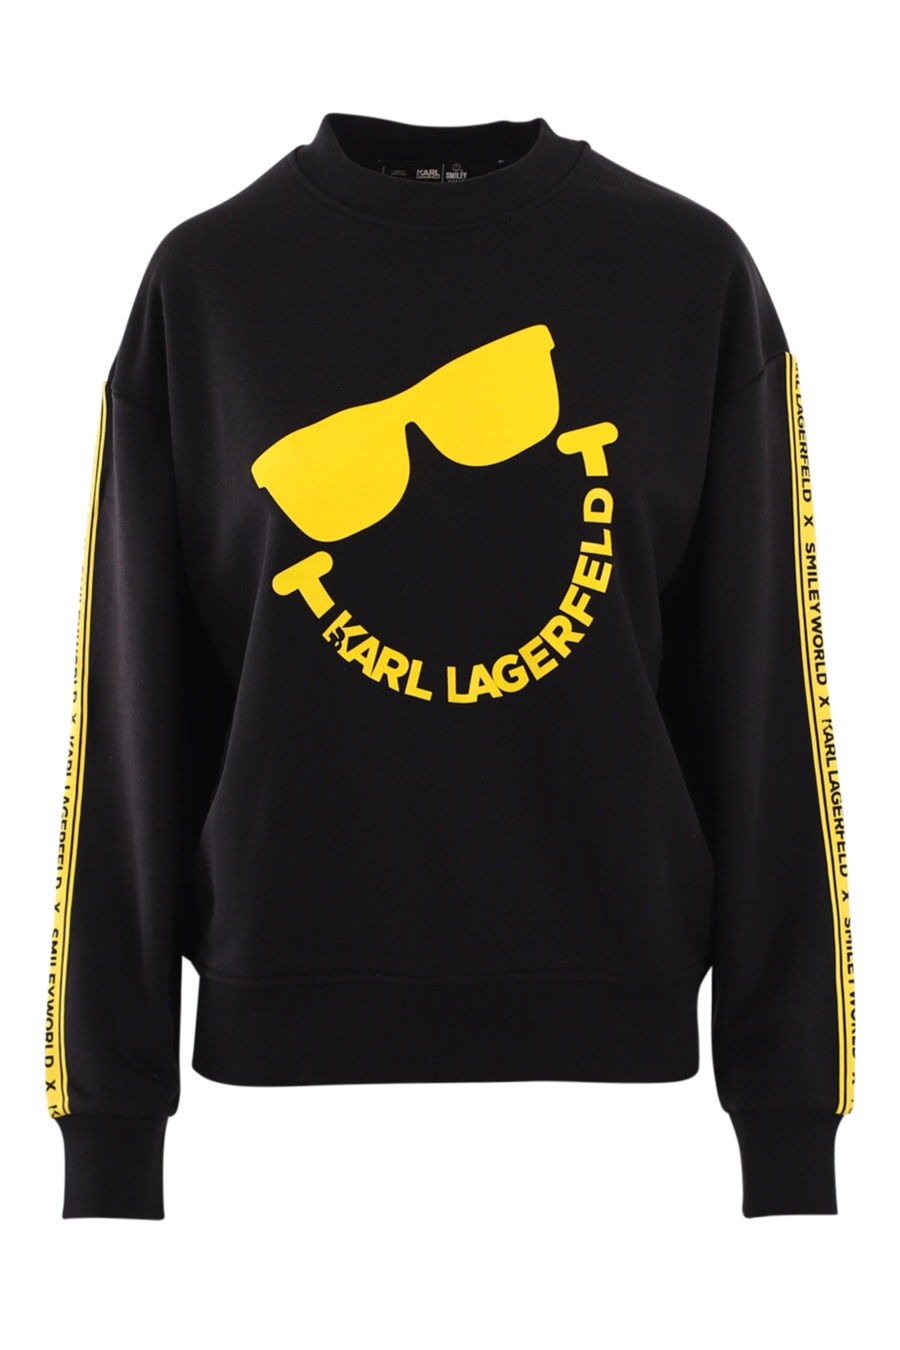 Schwarzes Unisex-Sweatshirt mit gelbem Bandlogo und "Smiley" - IMG 0886